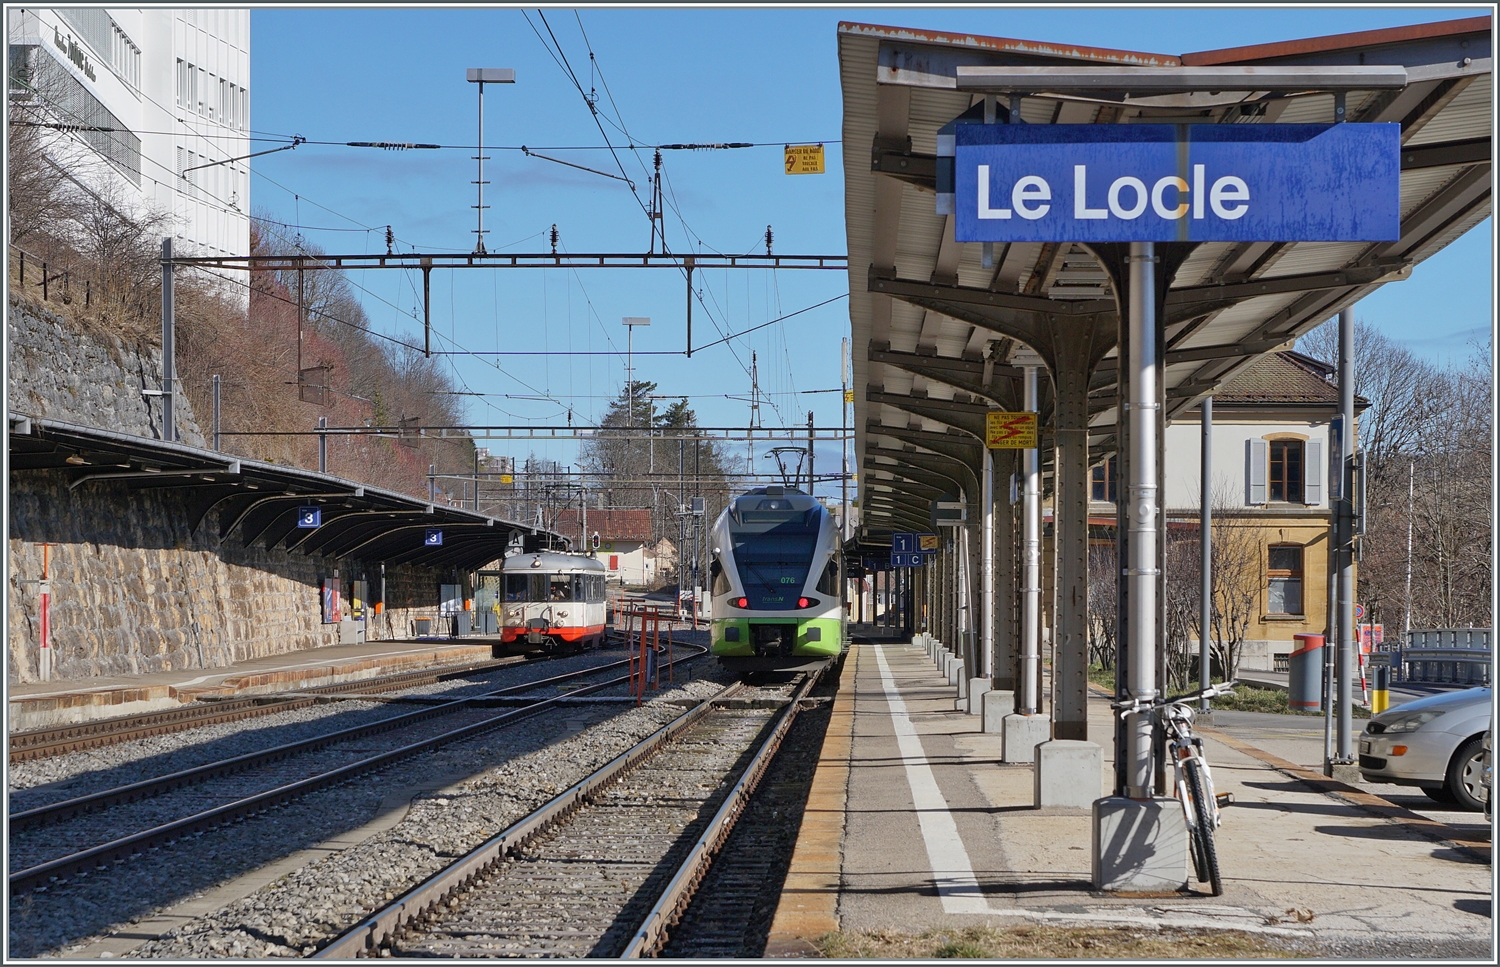 TRN / transN (ex cmn bzw. RVT) Züge in Le Locle: der BDe 4/4 N° 3 wartet auf die Abfahrt nach Les Brenets und der Flirt als R 20 nach Neuchâtel, wobei der RABe 523 076 der SBB gehört und langfristig an die TRN / transN vermietet wurde.

3. Feb. 2024